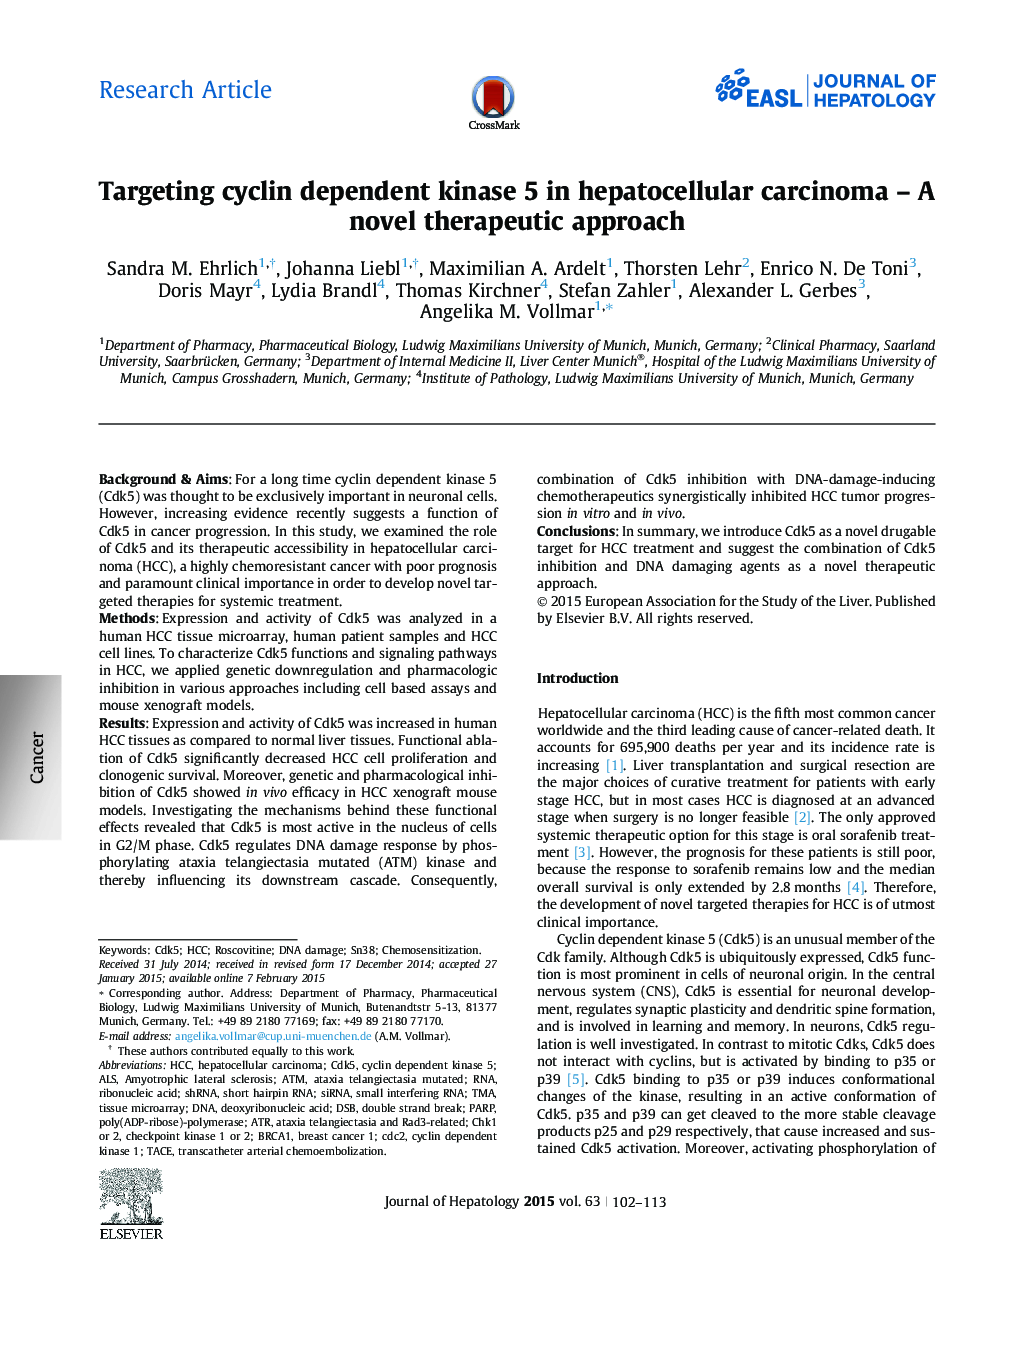 مقاله پژوهشی مقاله: اهدای سیکلین وابسته به کیناز 5 در کارسینوم سلول های بنیادی - رویکرد درمان جدید 